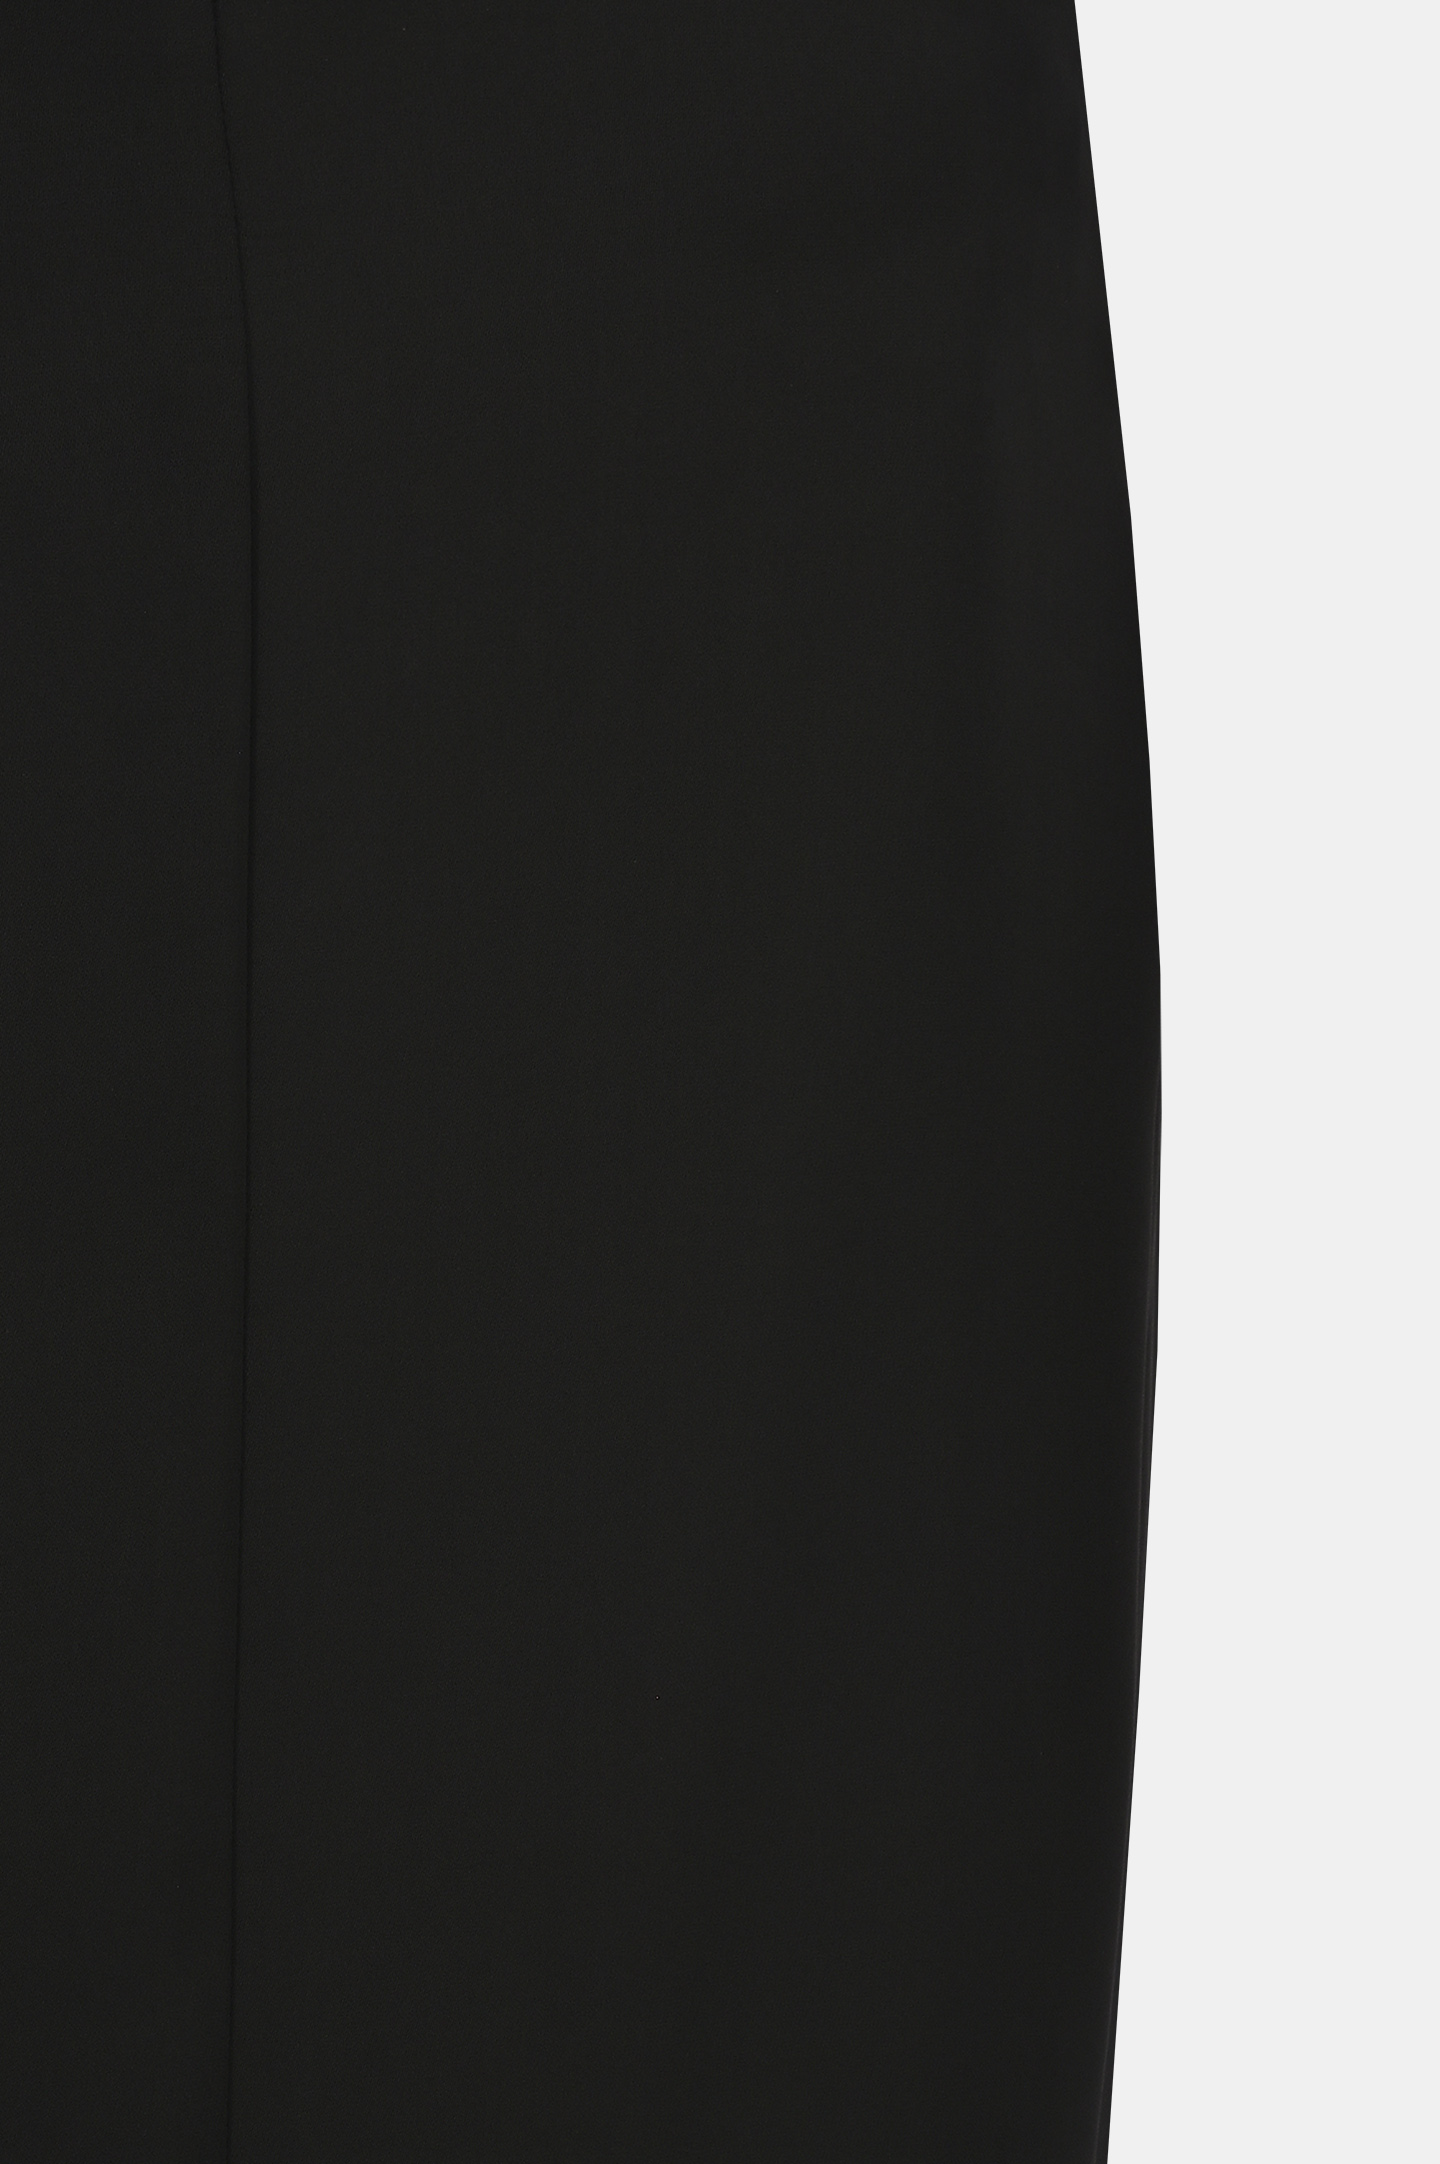 Юбка из полиэстера PHILOSOPHY DI LORENZO SERAFINI V0118 722, цвет: Черный, Женский